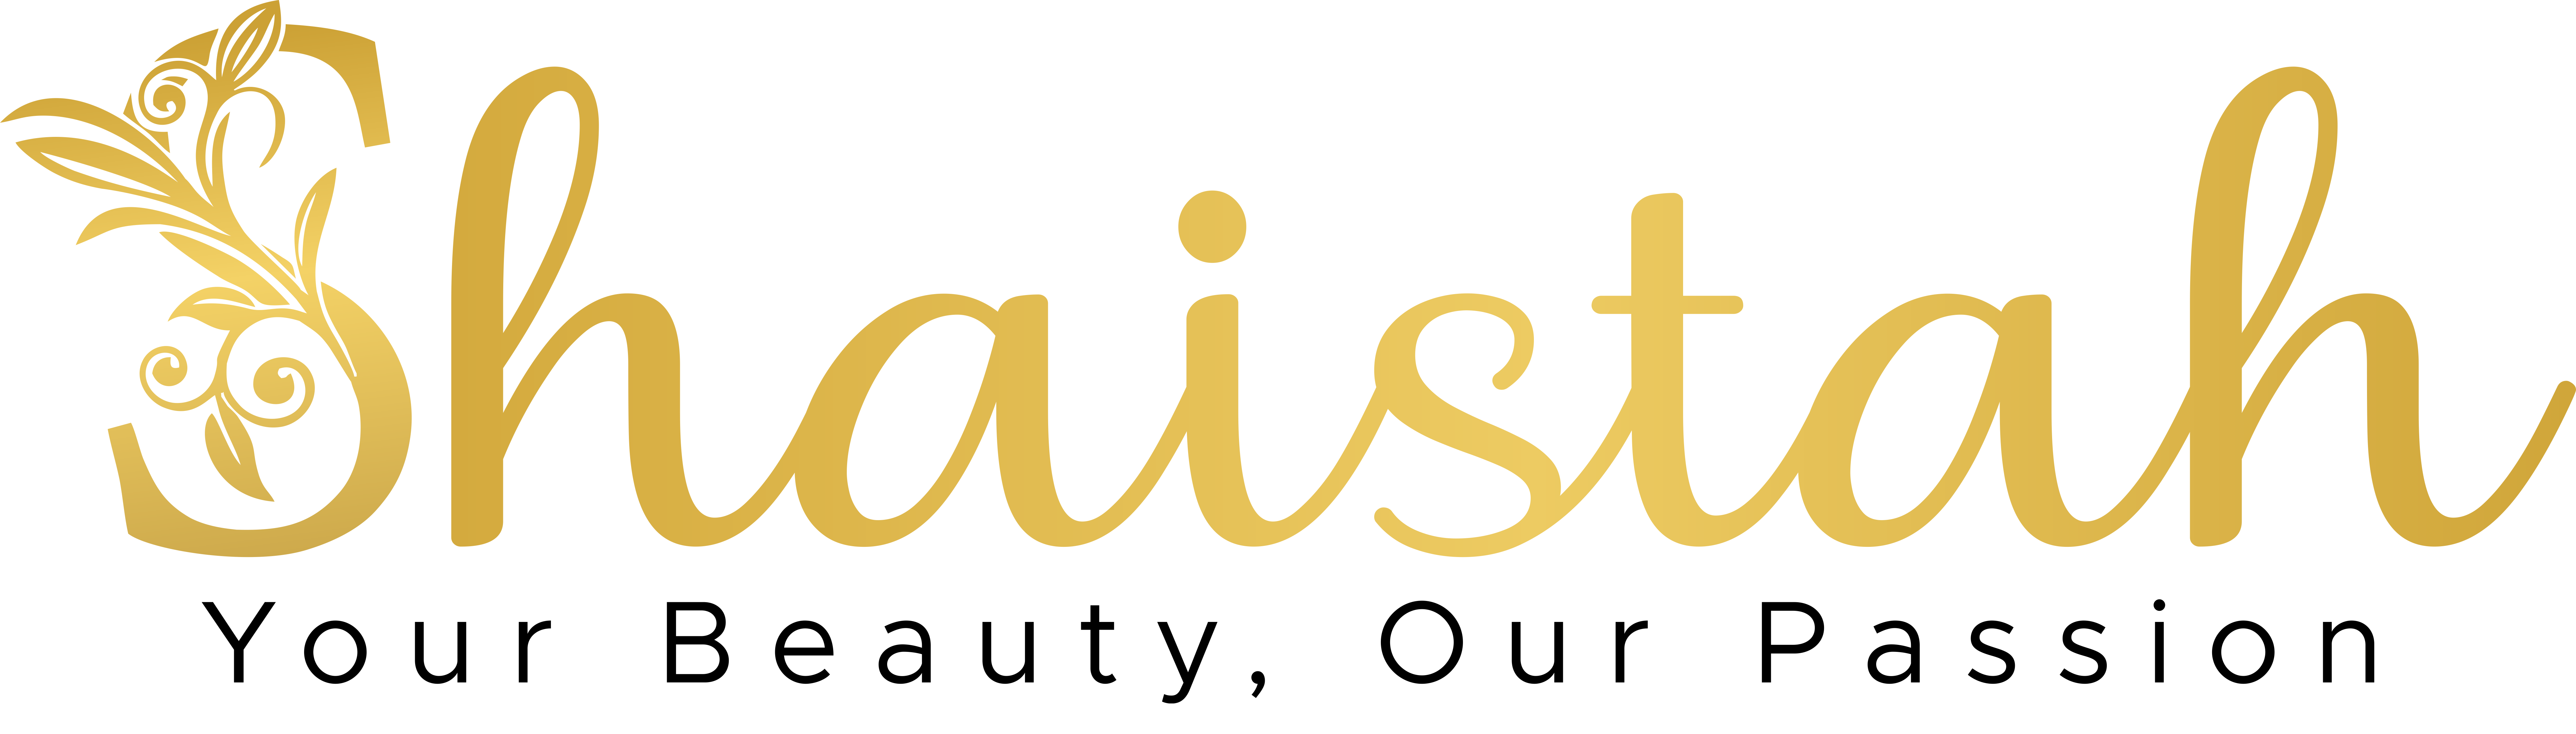 Shaistah logo